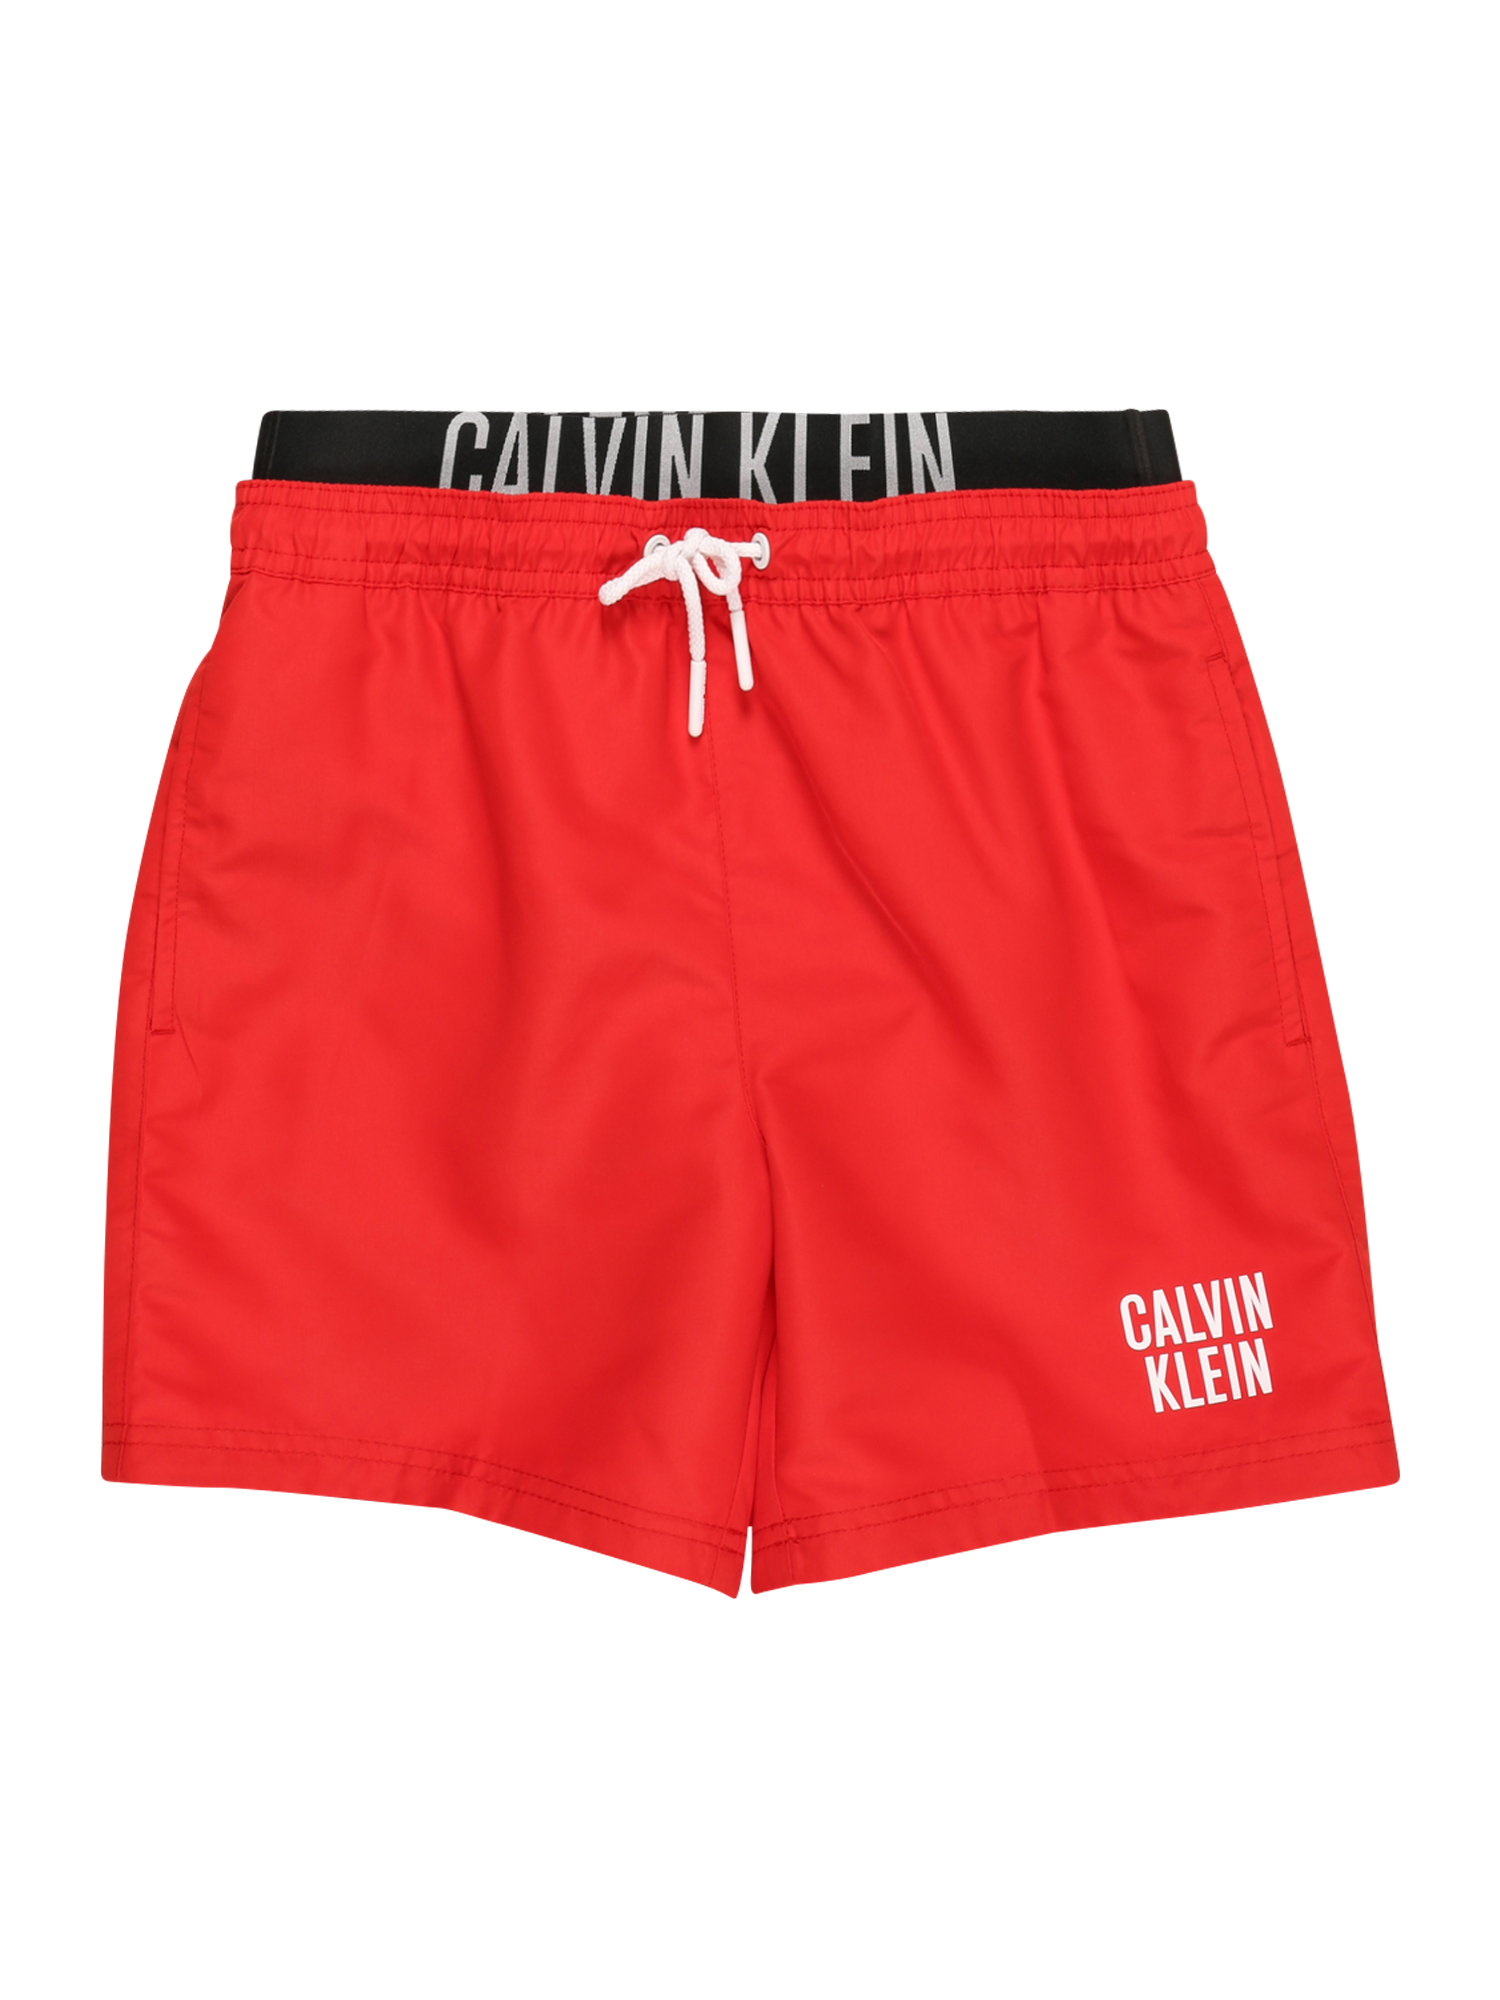 Chłopcy Dzieci (92-140 cm) Calvin Klein Swimwear Szorty kąpielowe w kolorze Czerwonym 